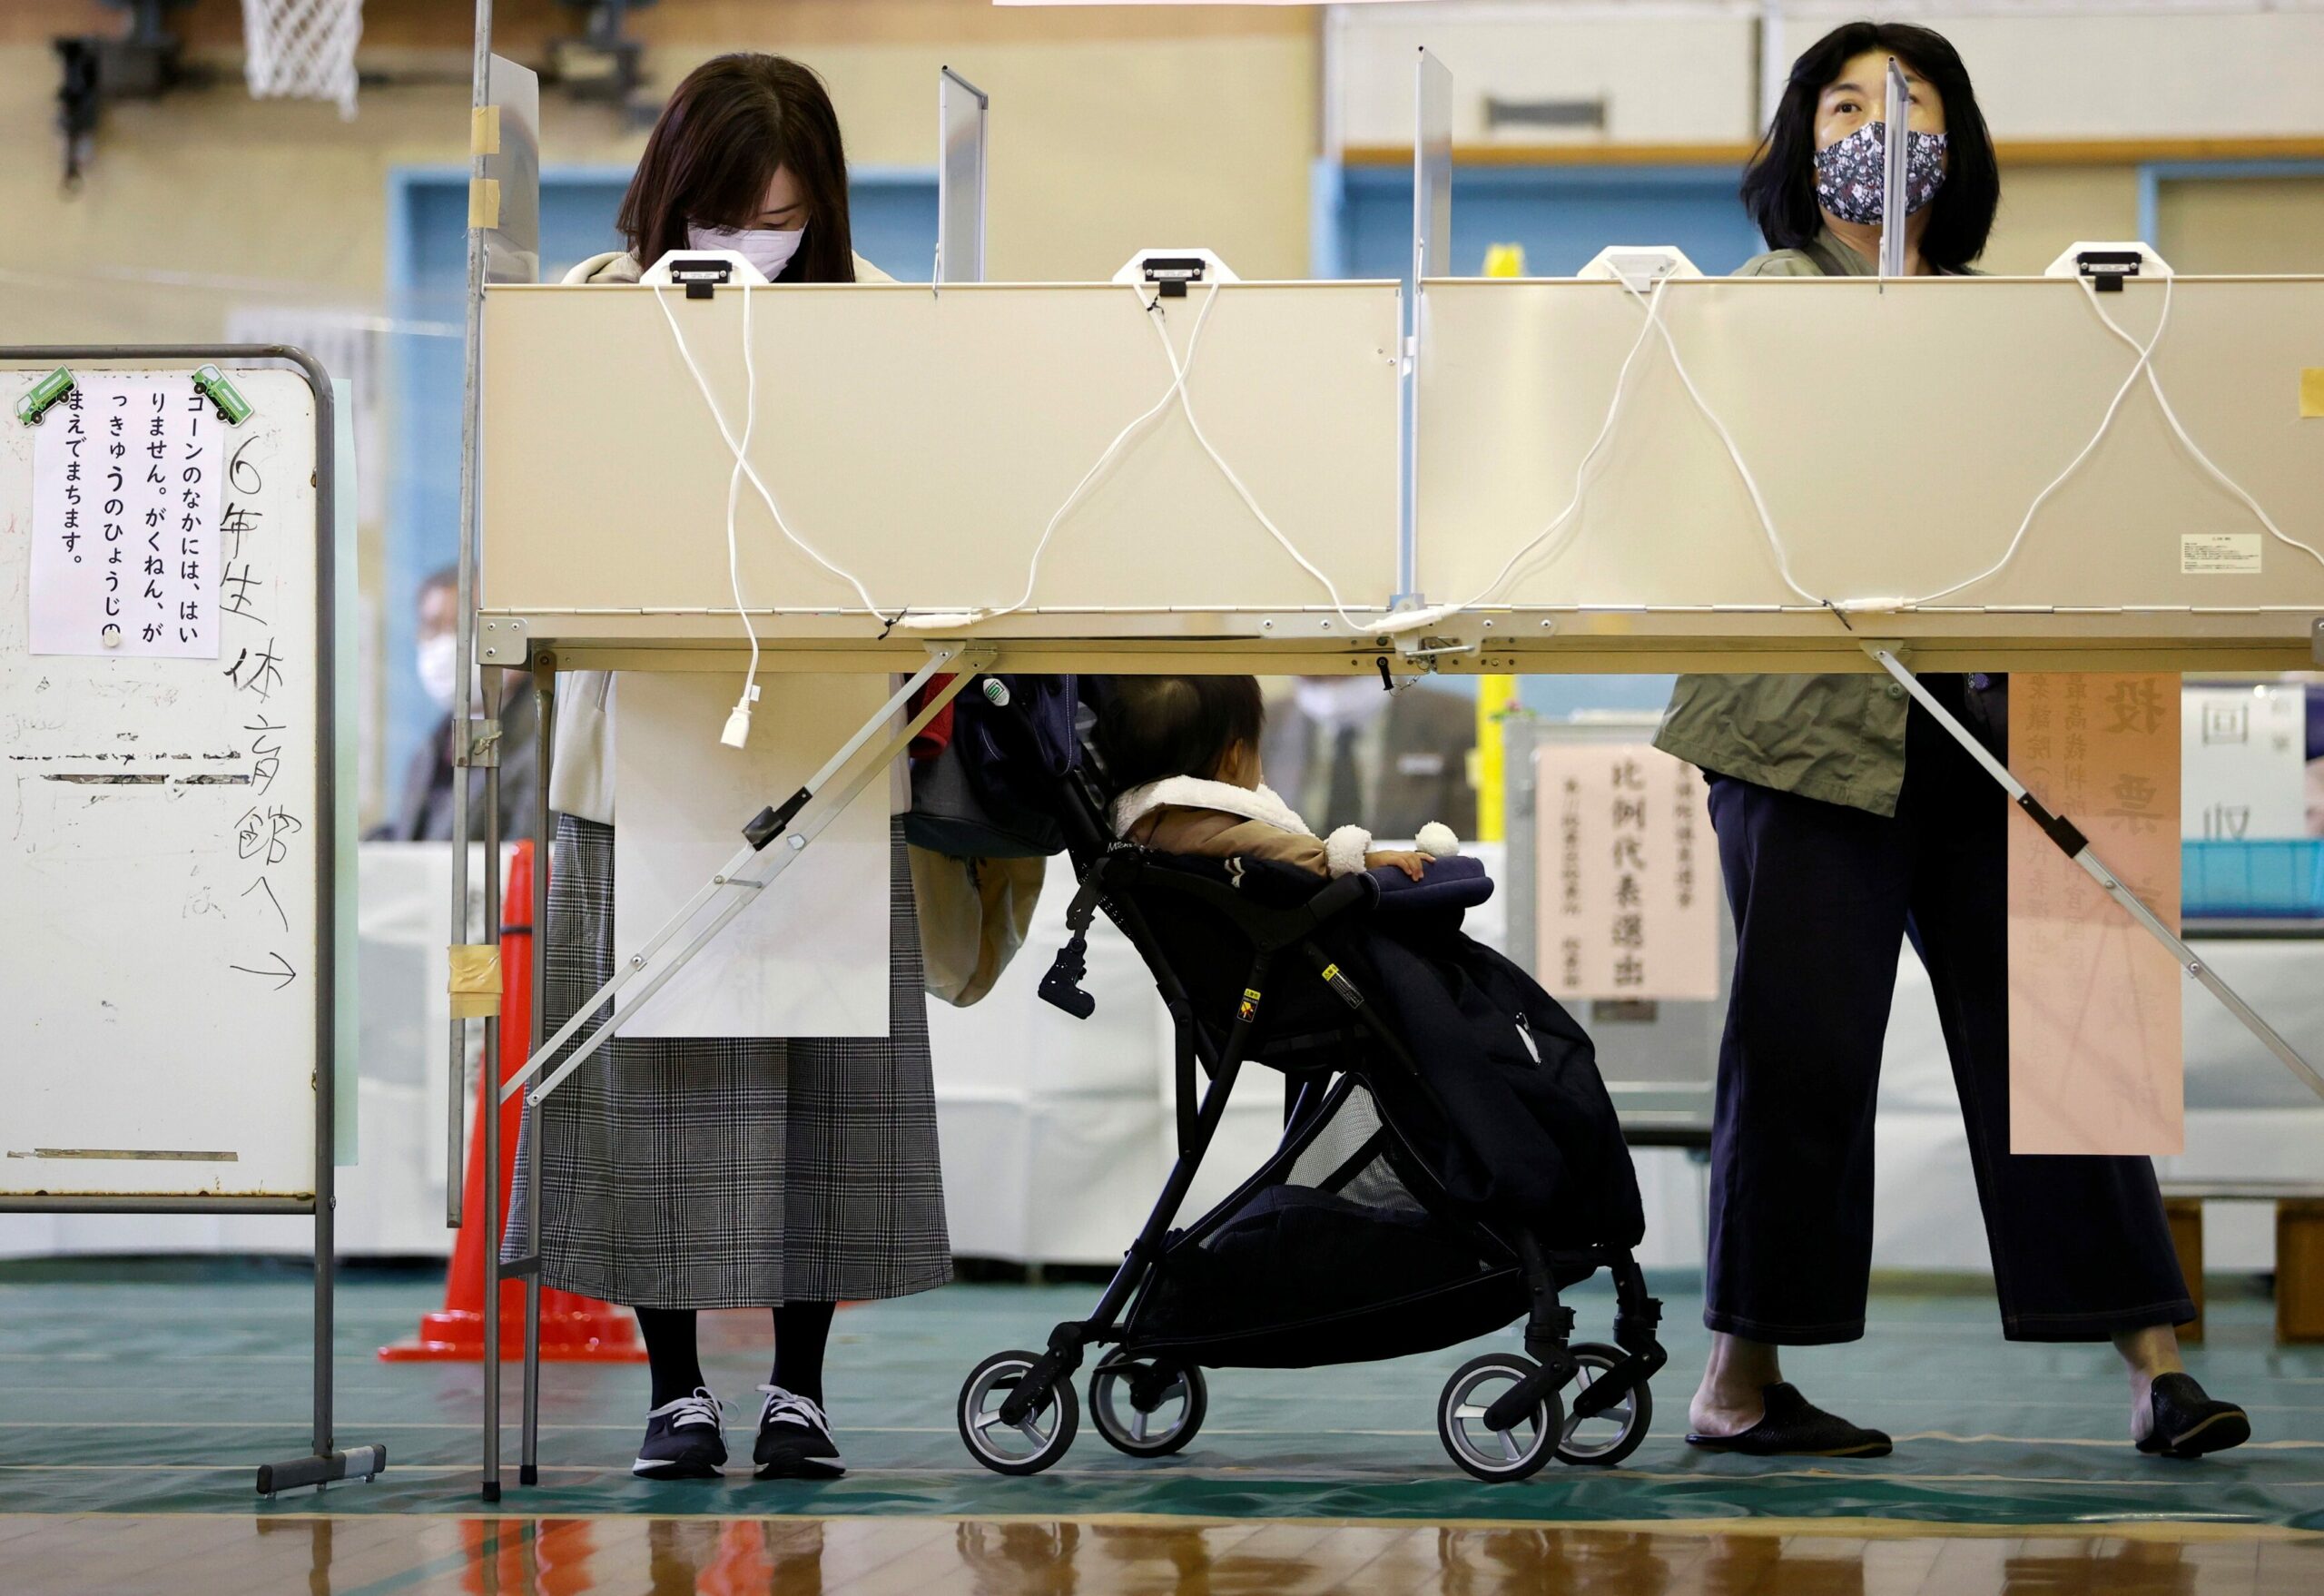 ญี่ปุ่นเข้าคูหาเลือกตั้งวันนี้ ชี้ชะตานายกรัฐมนตรี ‘ฟุมิโอะ คิชิดะ’